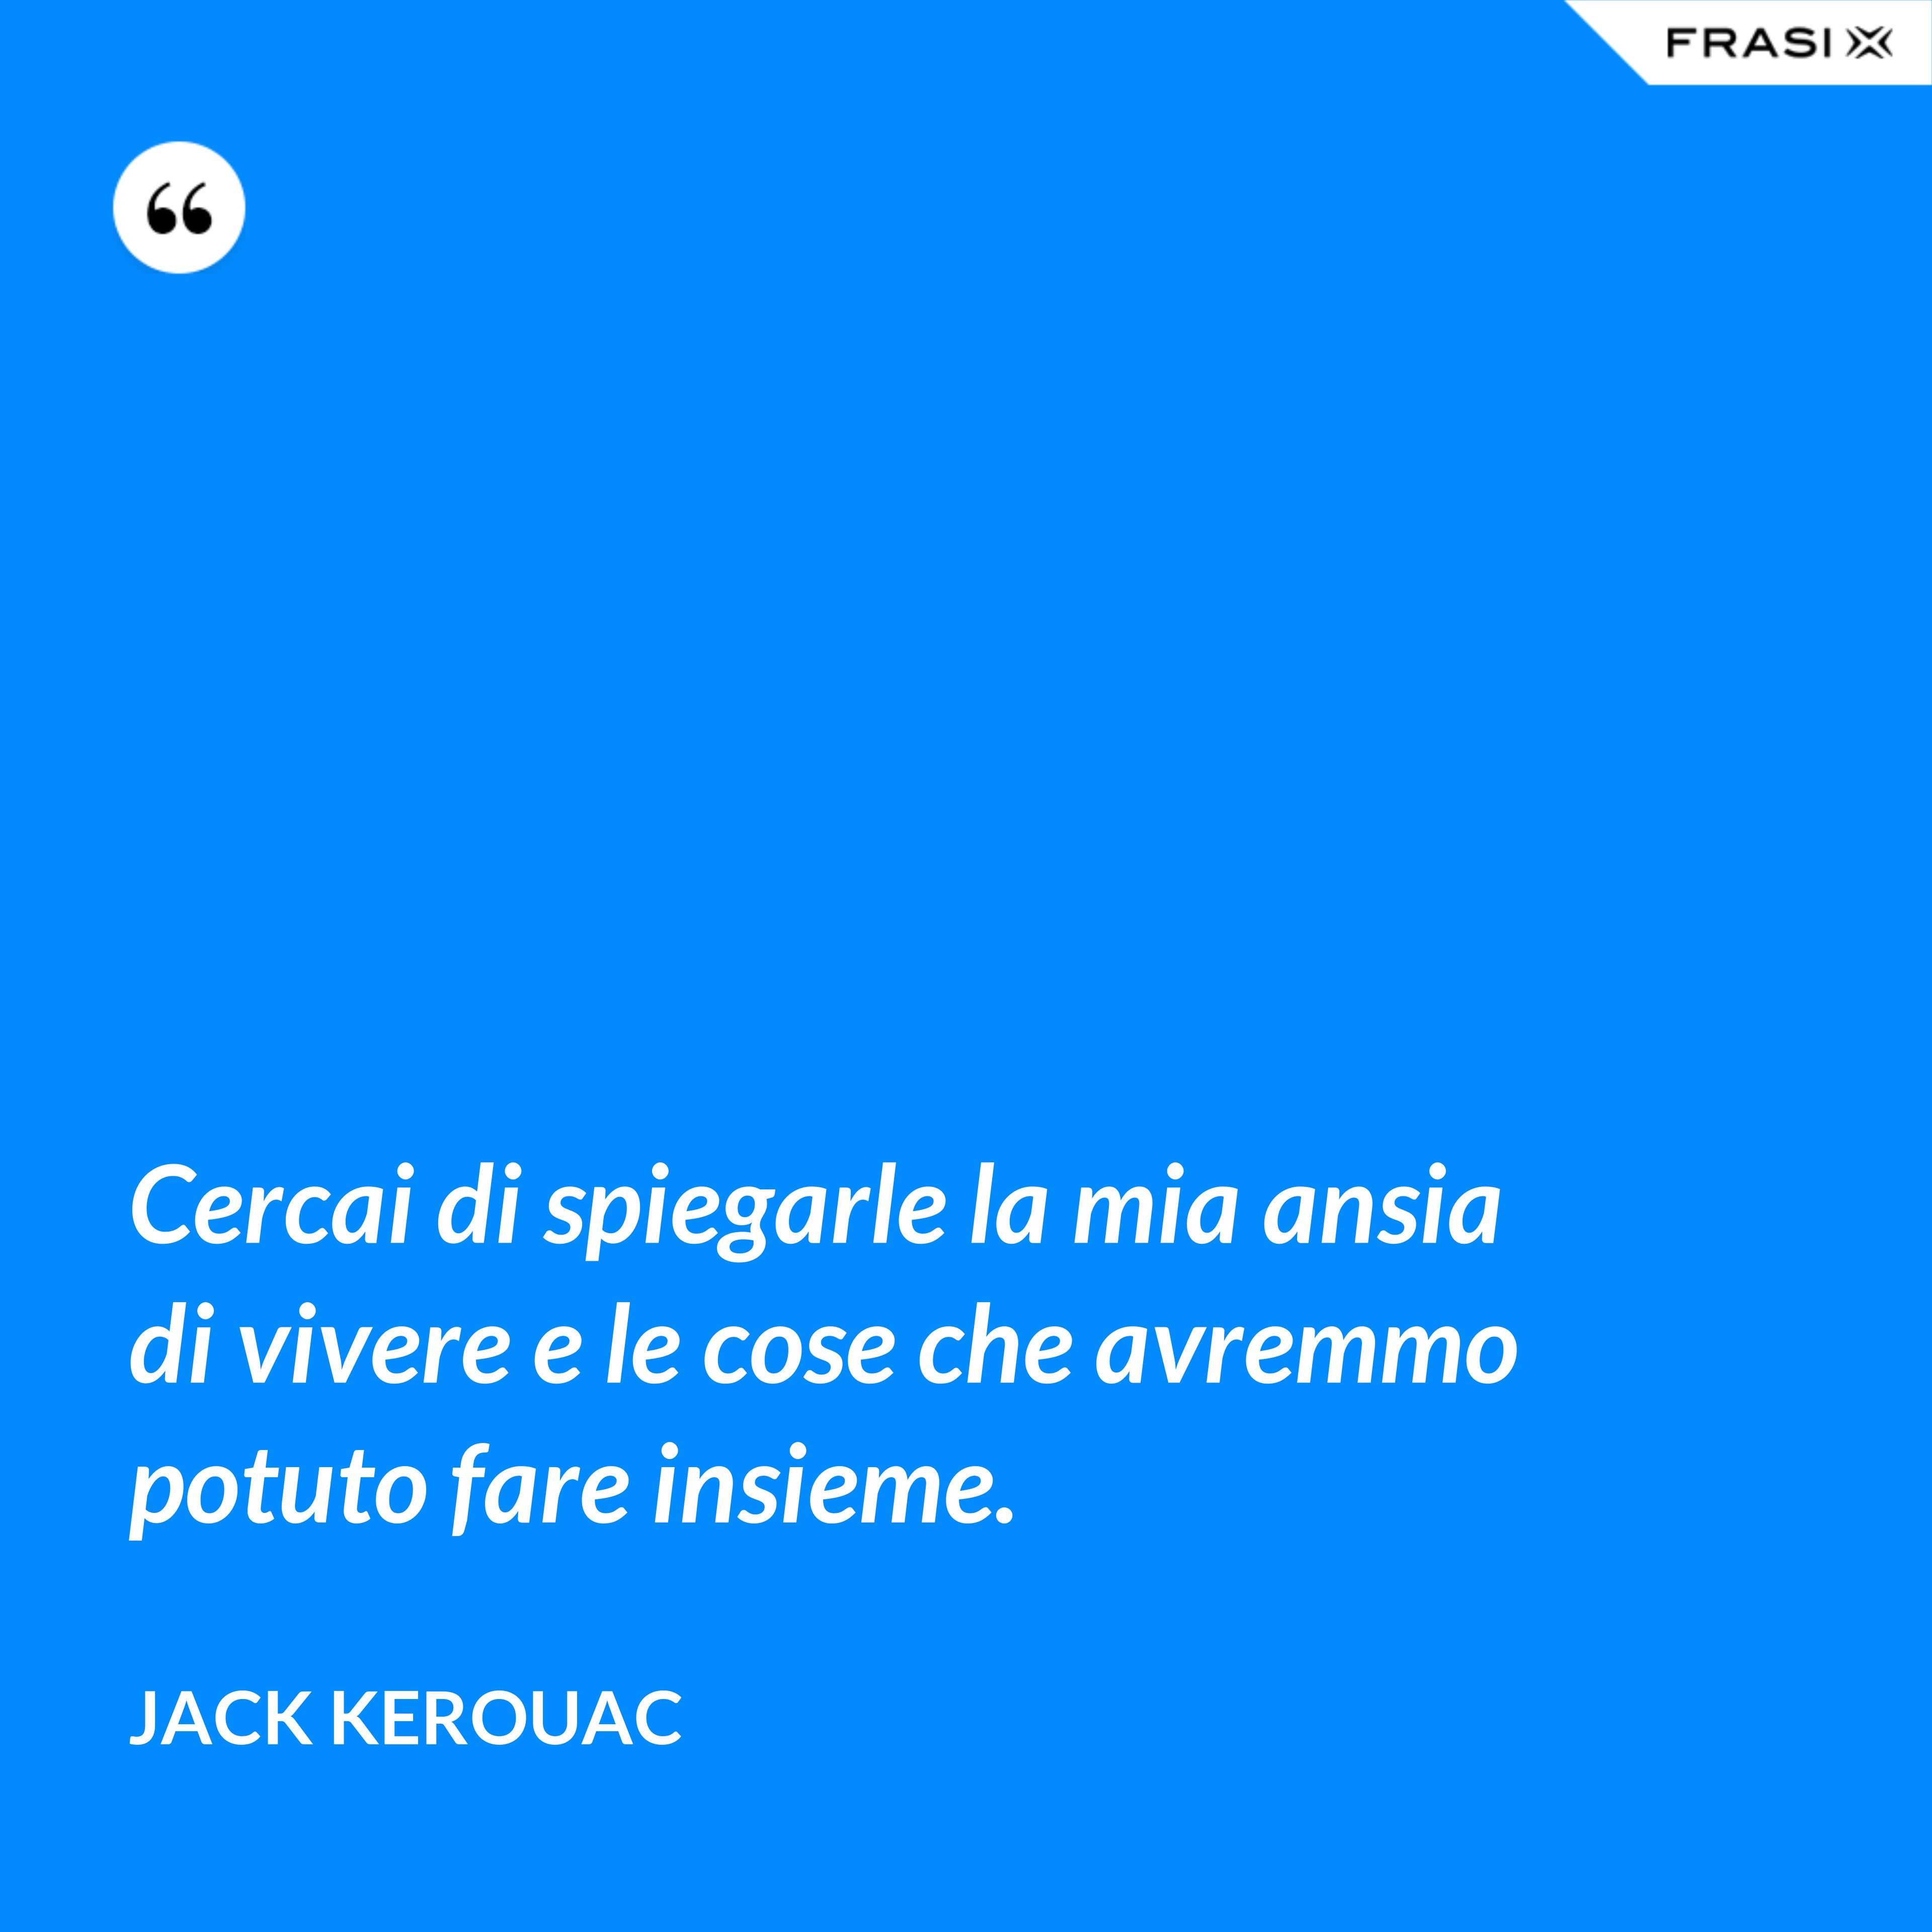 Cercai di spiegarle la mia ansia di vivere e le cose che avremmo potuto fare insieme. - Jack Kerouac